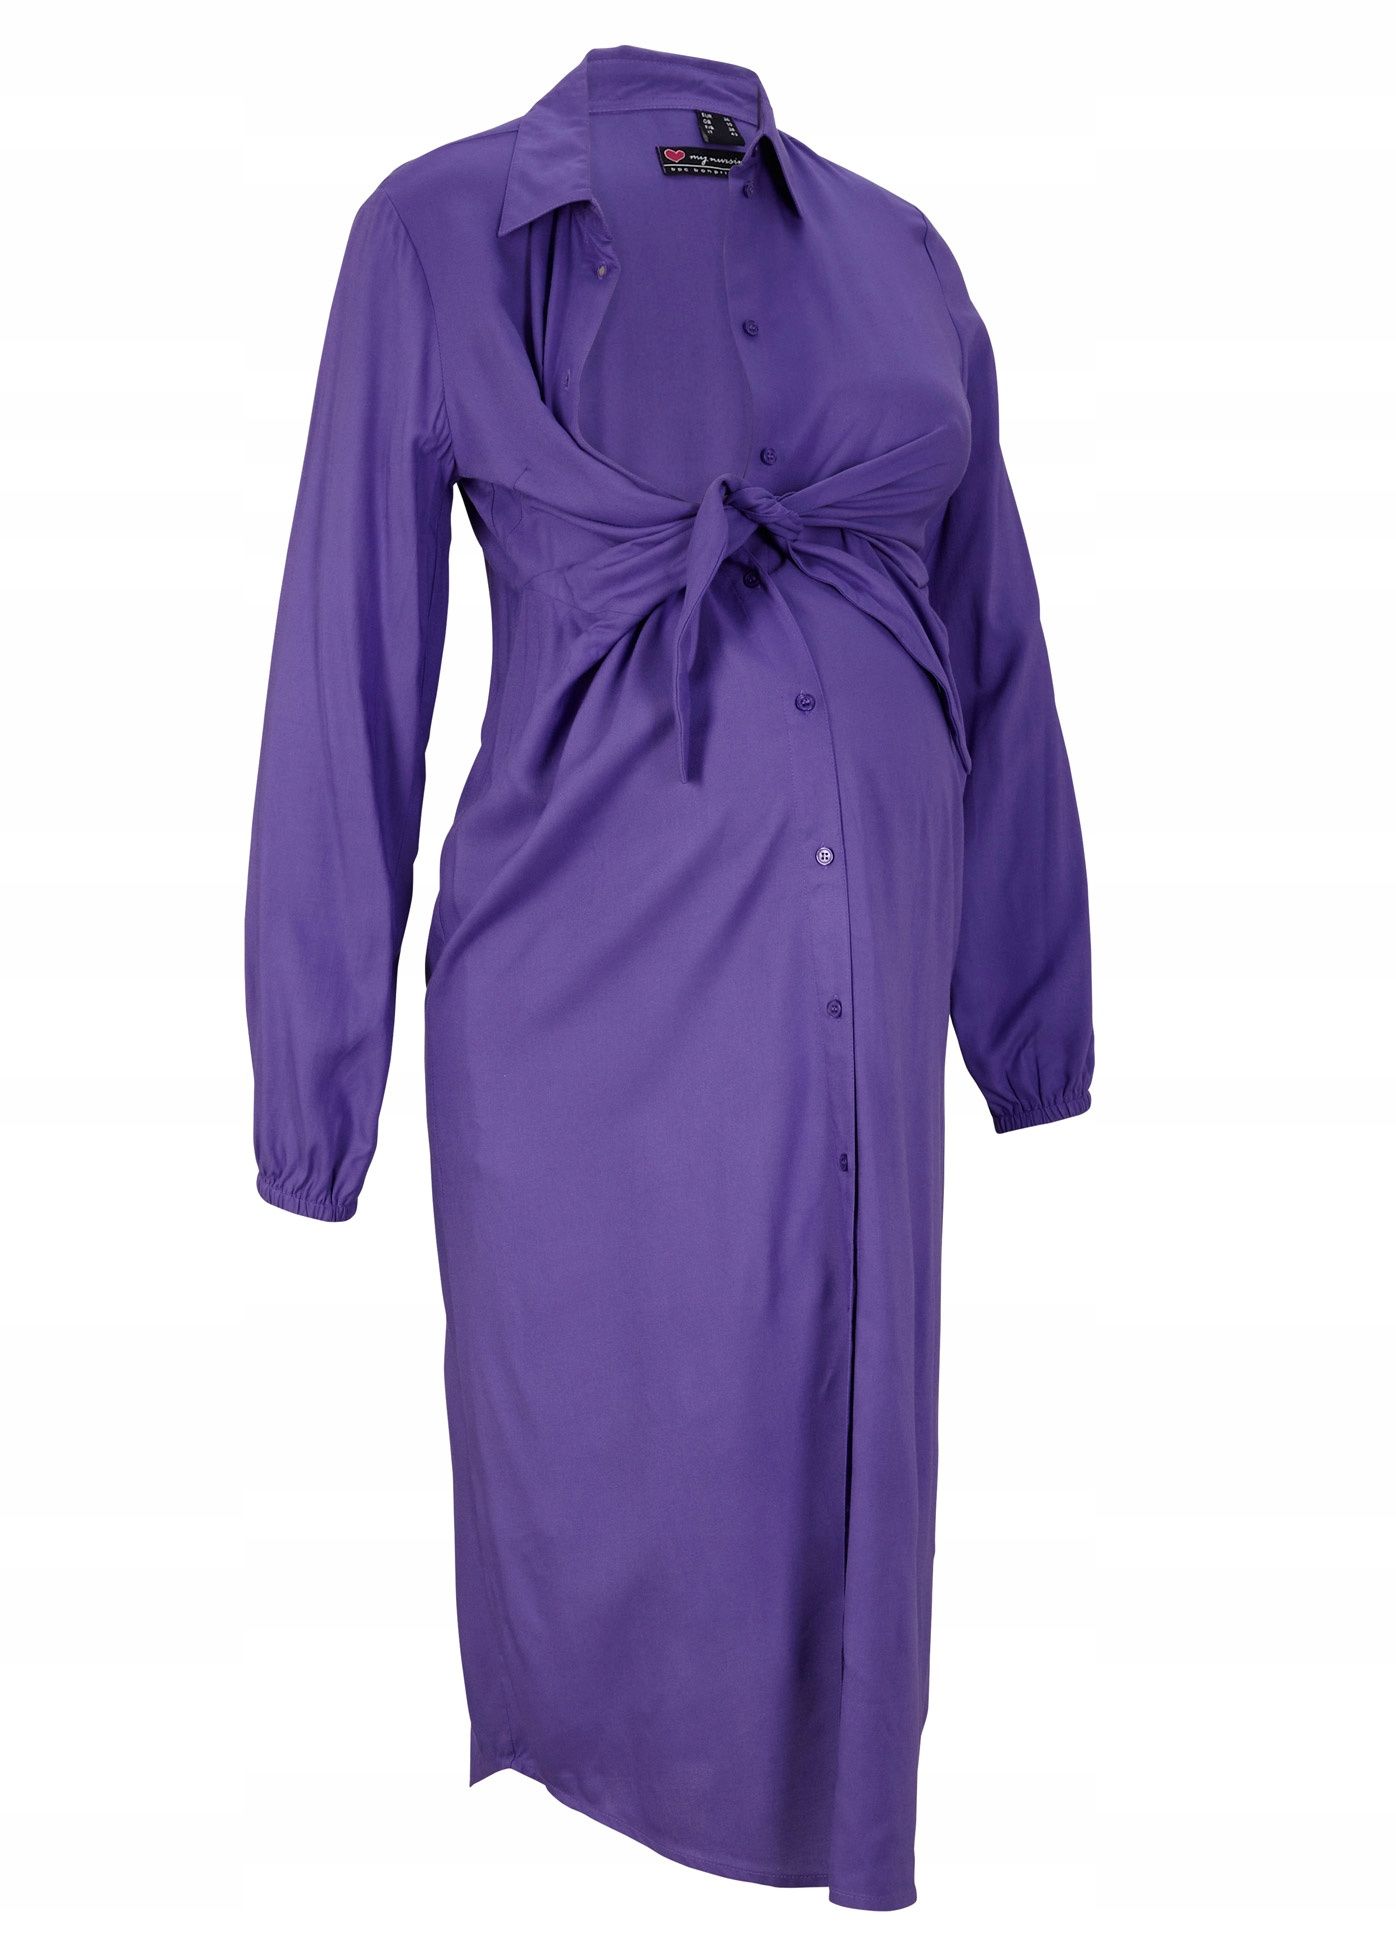 B.P.C ciążowa sukienka koszulowa fioletowa 36/38.